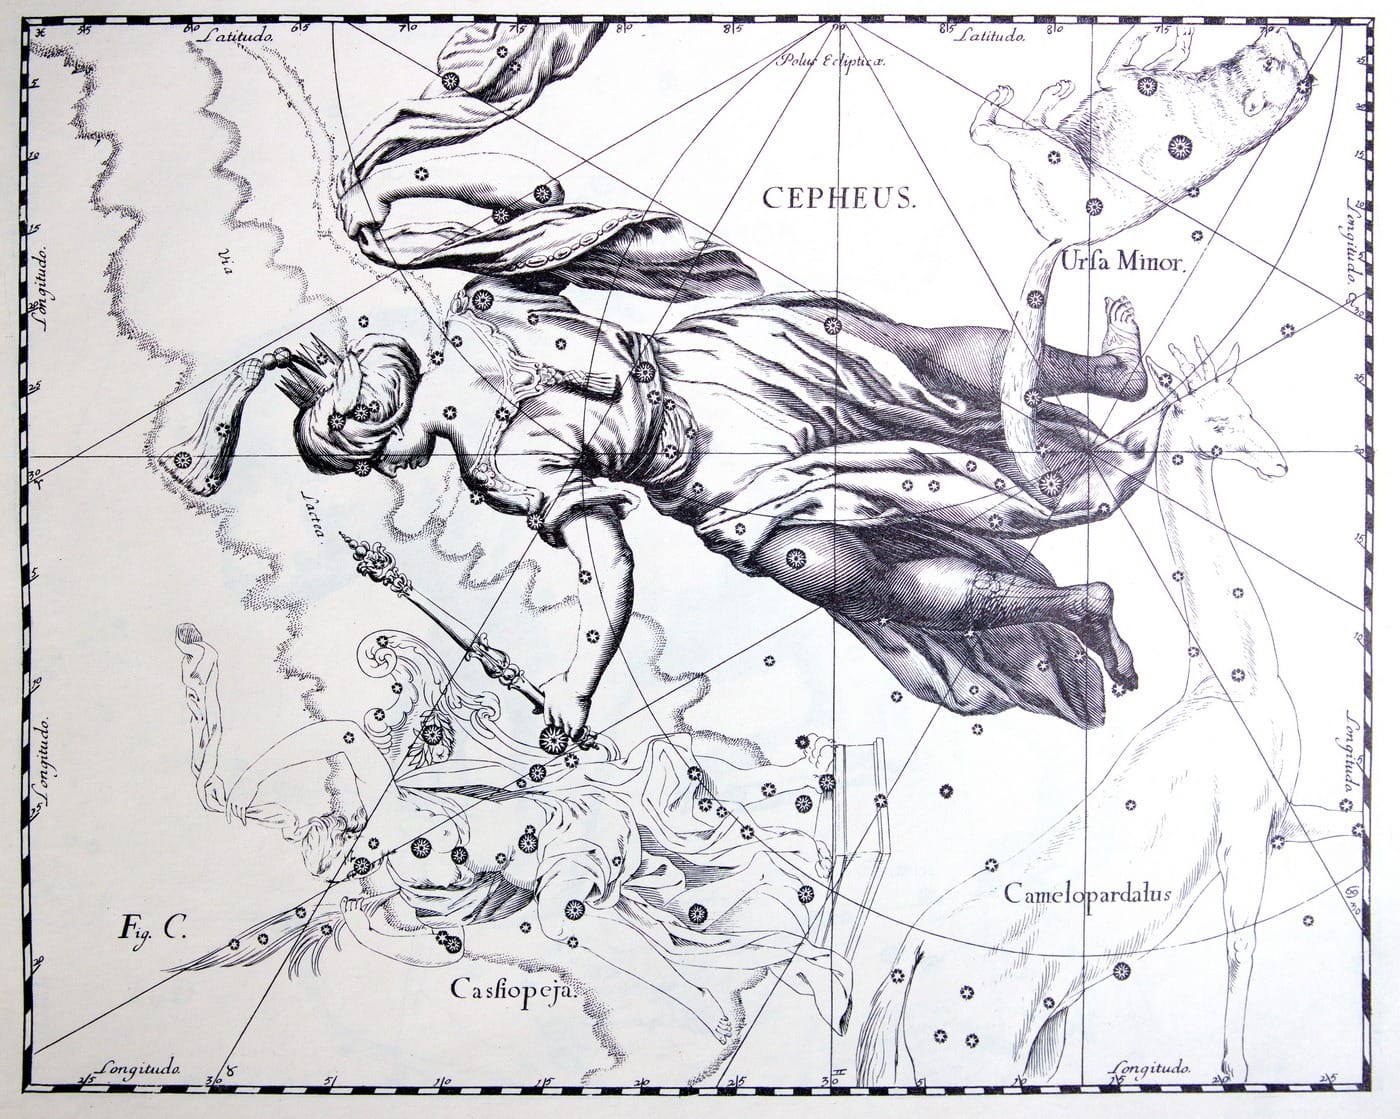 König Cepheus als Sternbild nach Hevelius